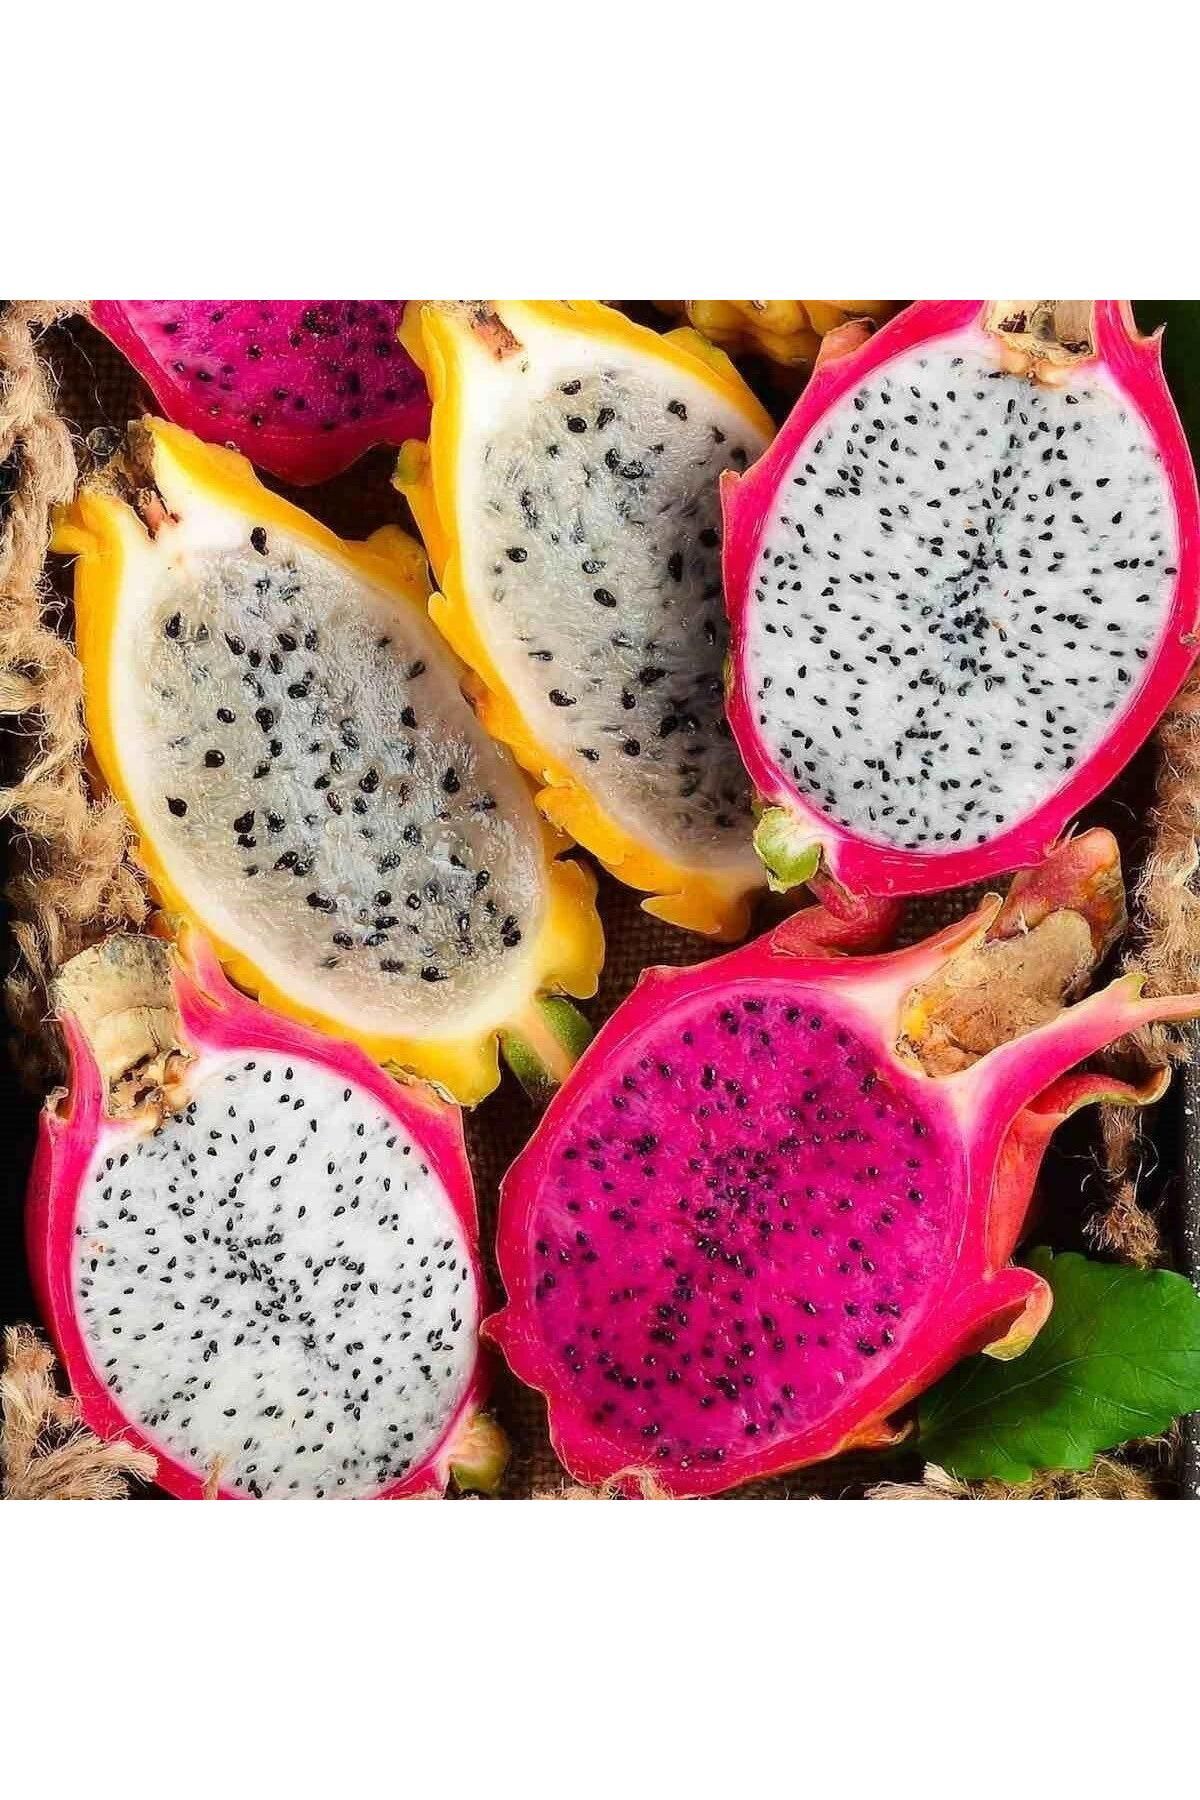 Reyon Bahçe Bodur Saksıya Uygun 3 Farklı Renk Pitaya Ejder Meyvesi Fidanı Pakedi